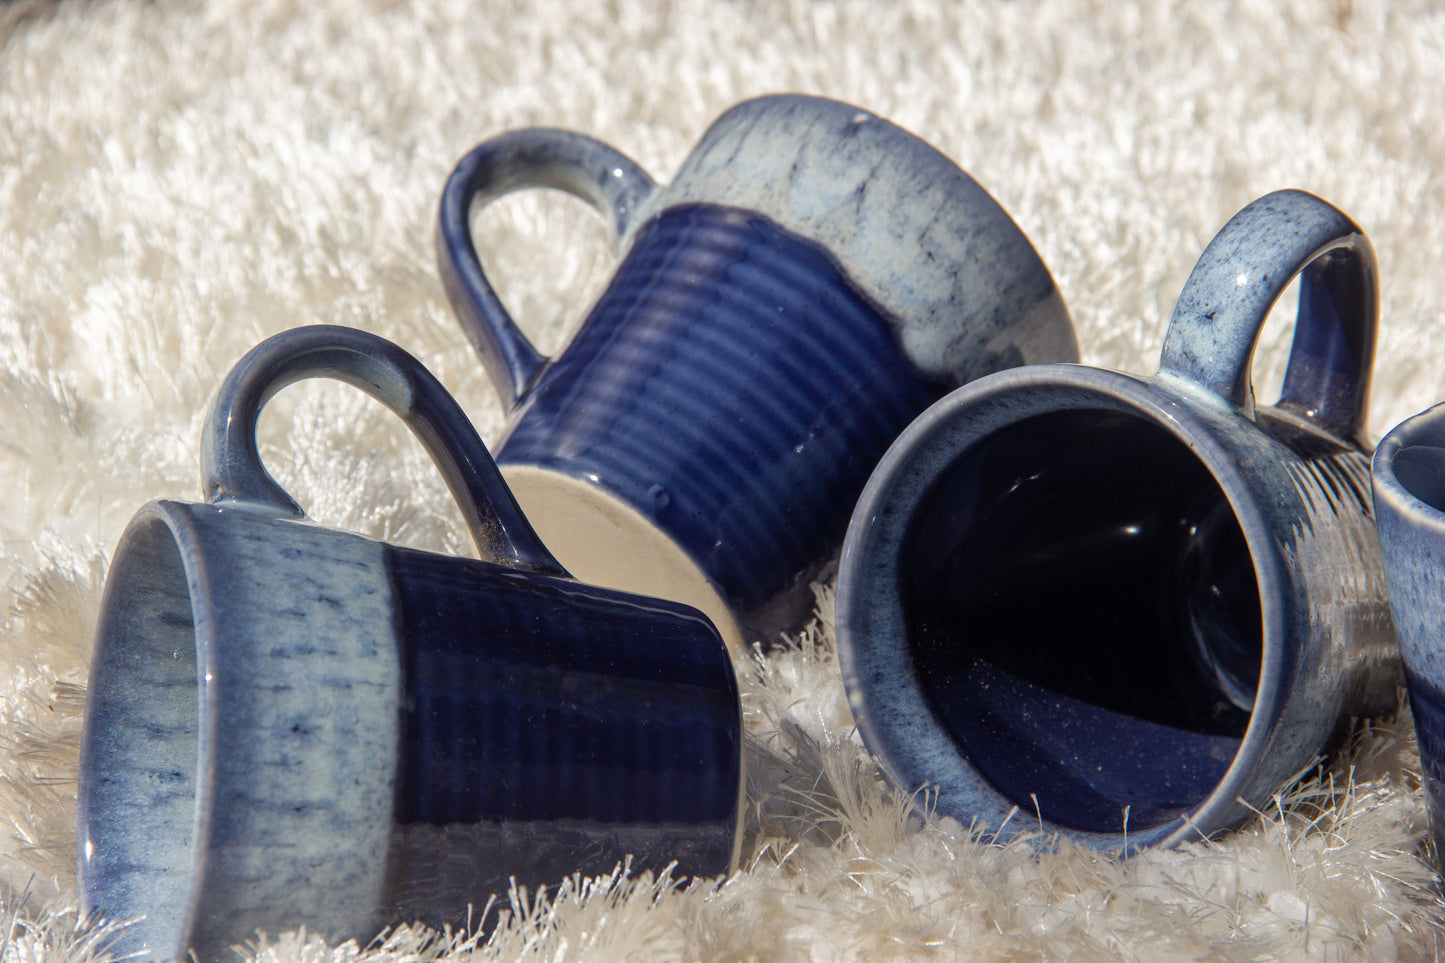 Ocean Blue Ceramic Mugs